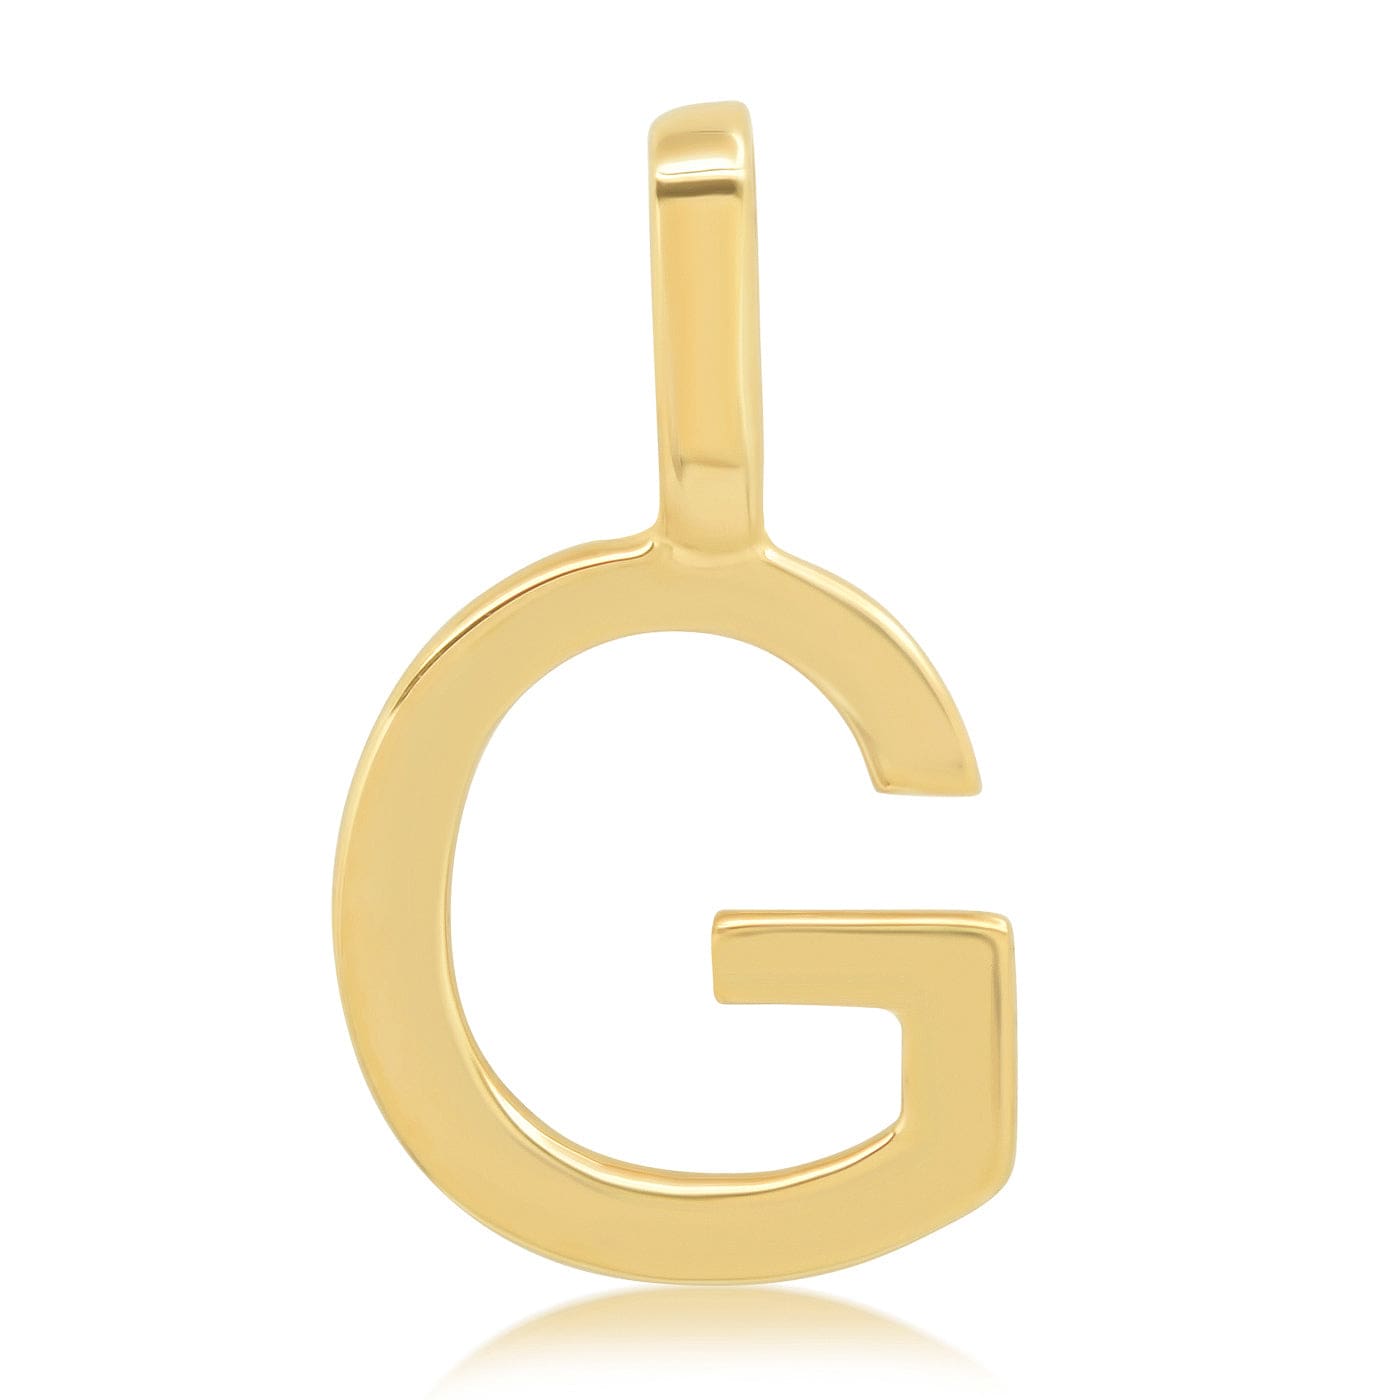 TAI JEWELRY Necklace G 14K Monogram Pendant